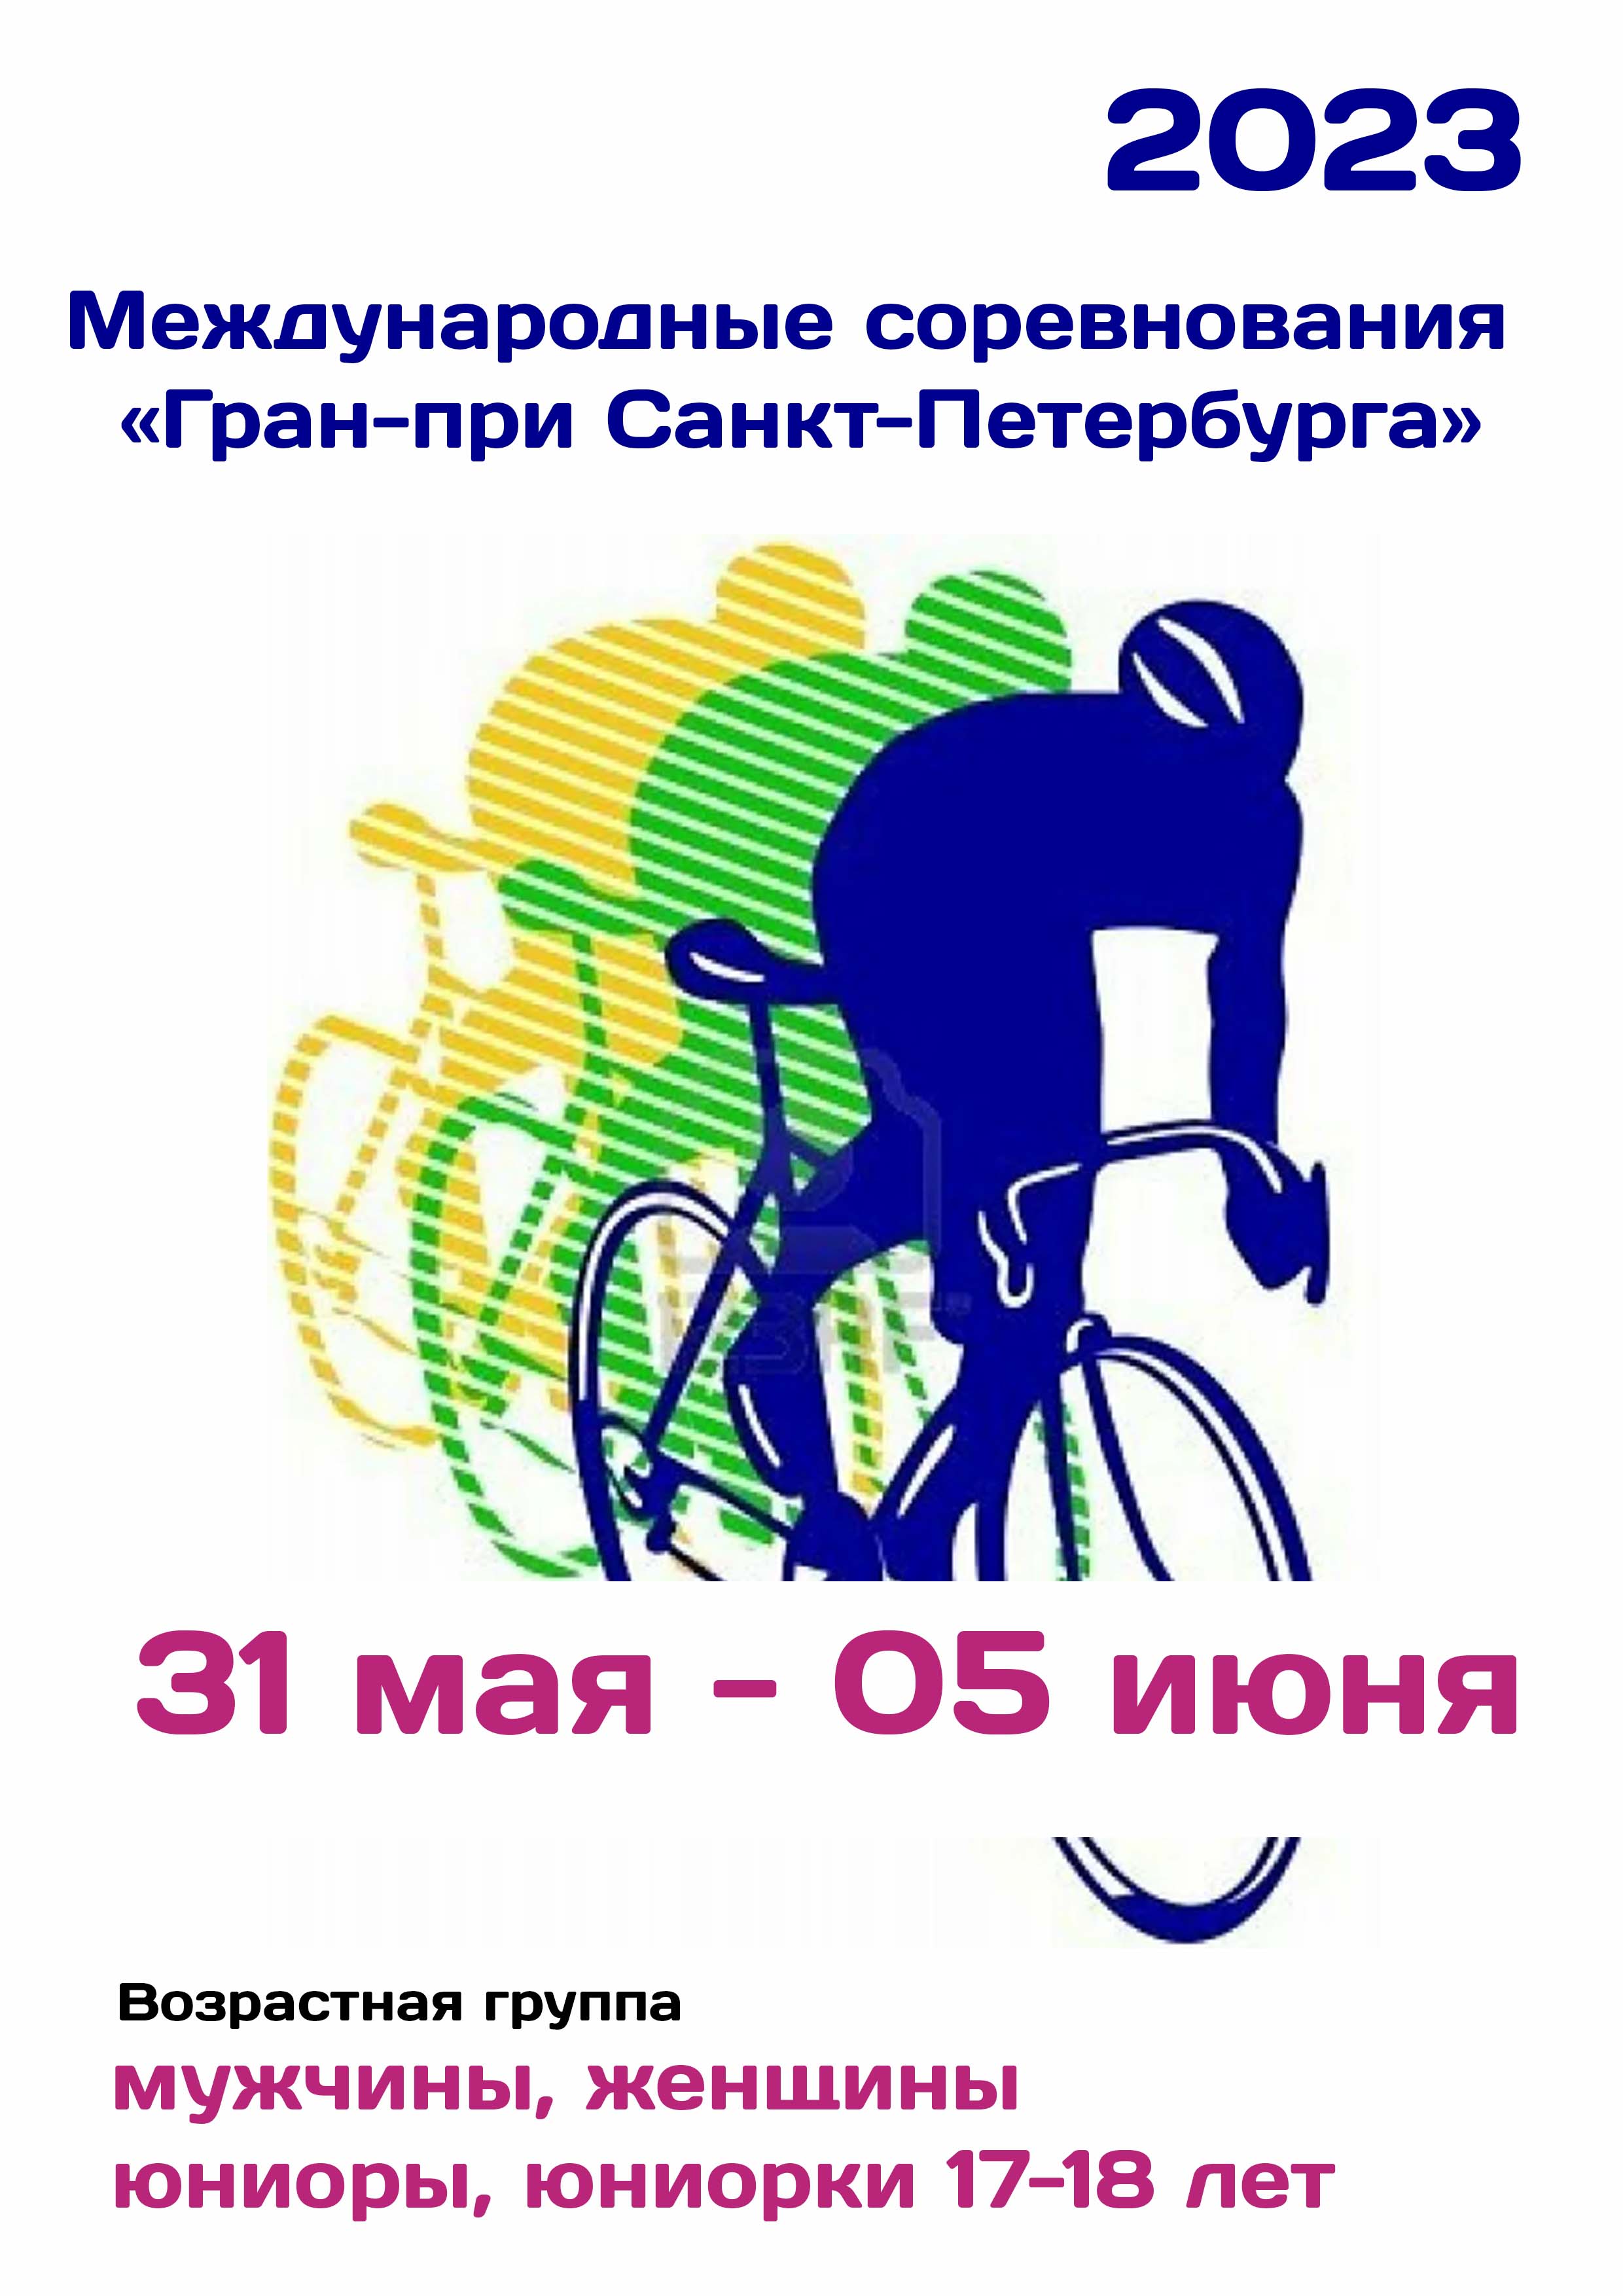 Международные соревнования «Гран-при Санкт-Петербурга»  по велоспорту 31  мая
 2023  год
 